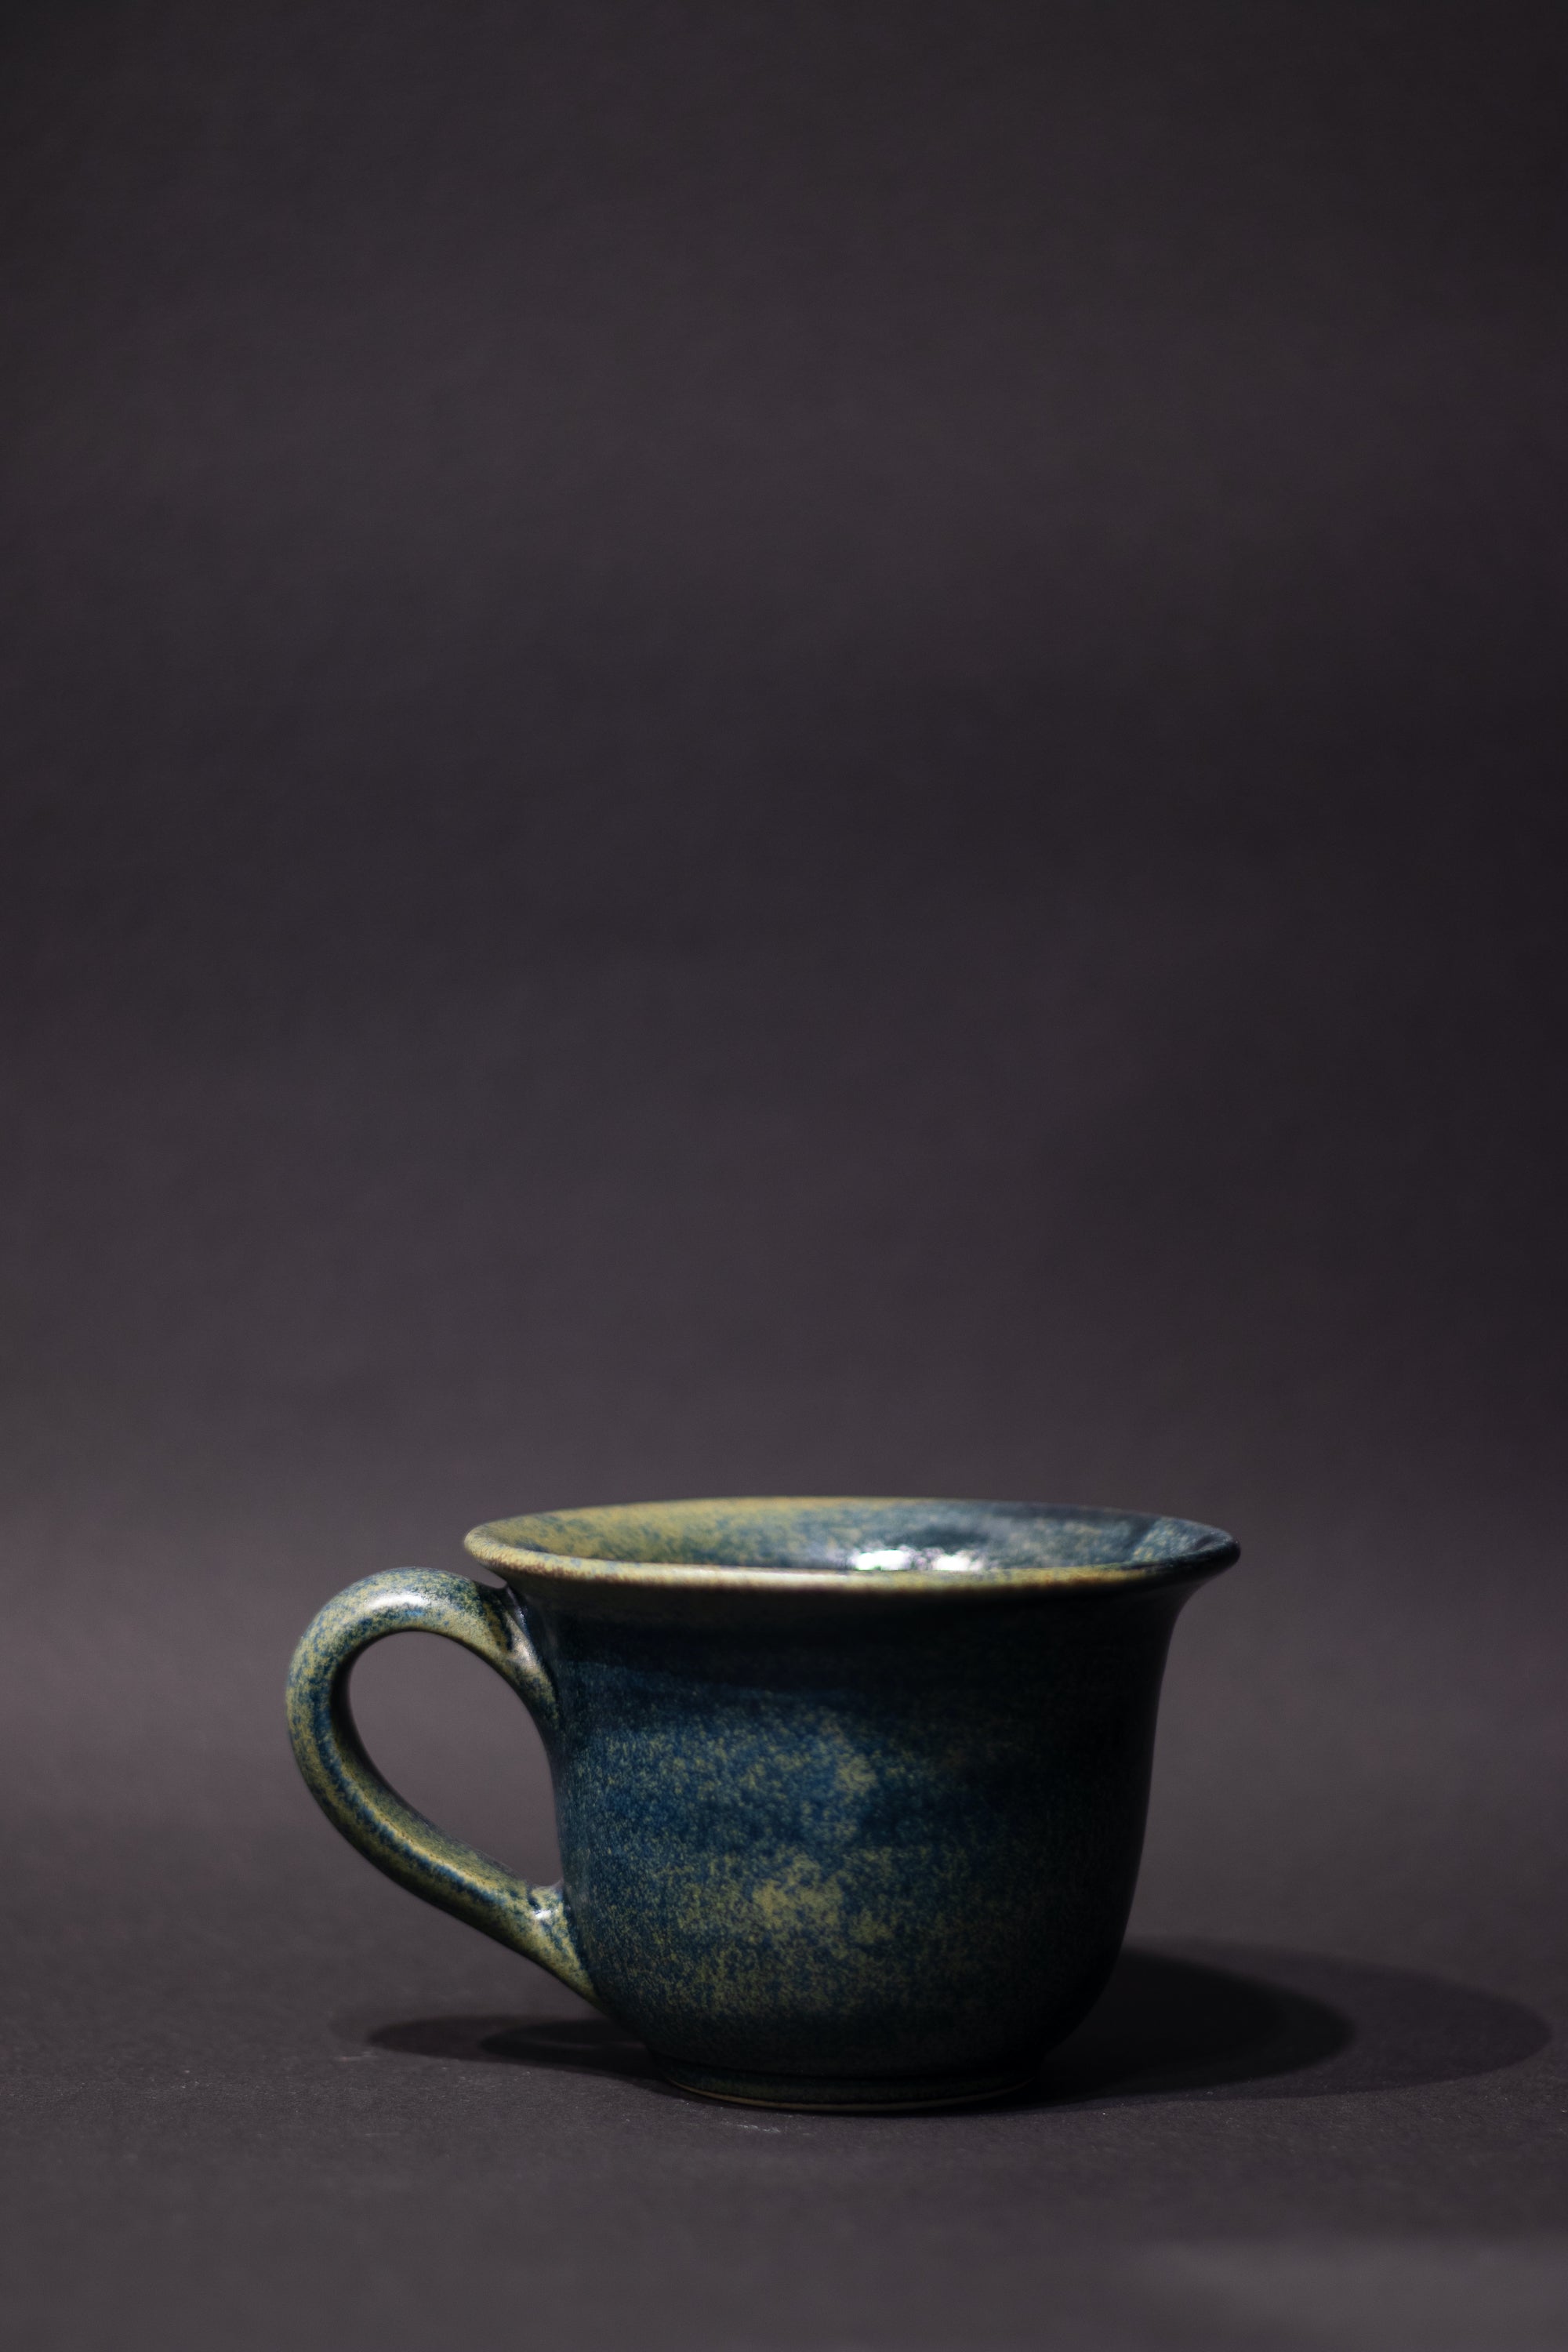 M Handmade ceramic mug with a handle